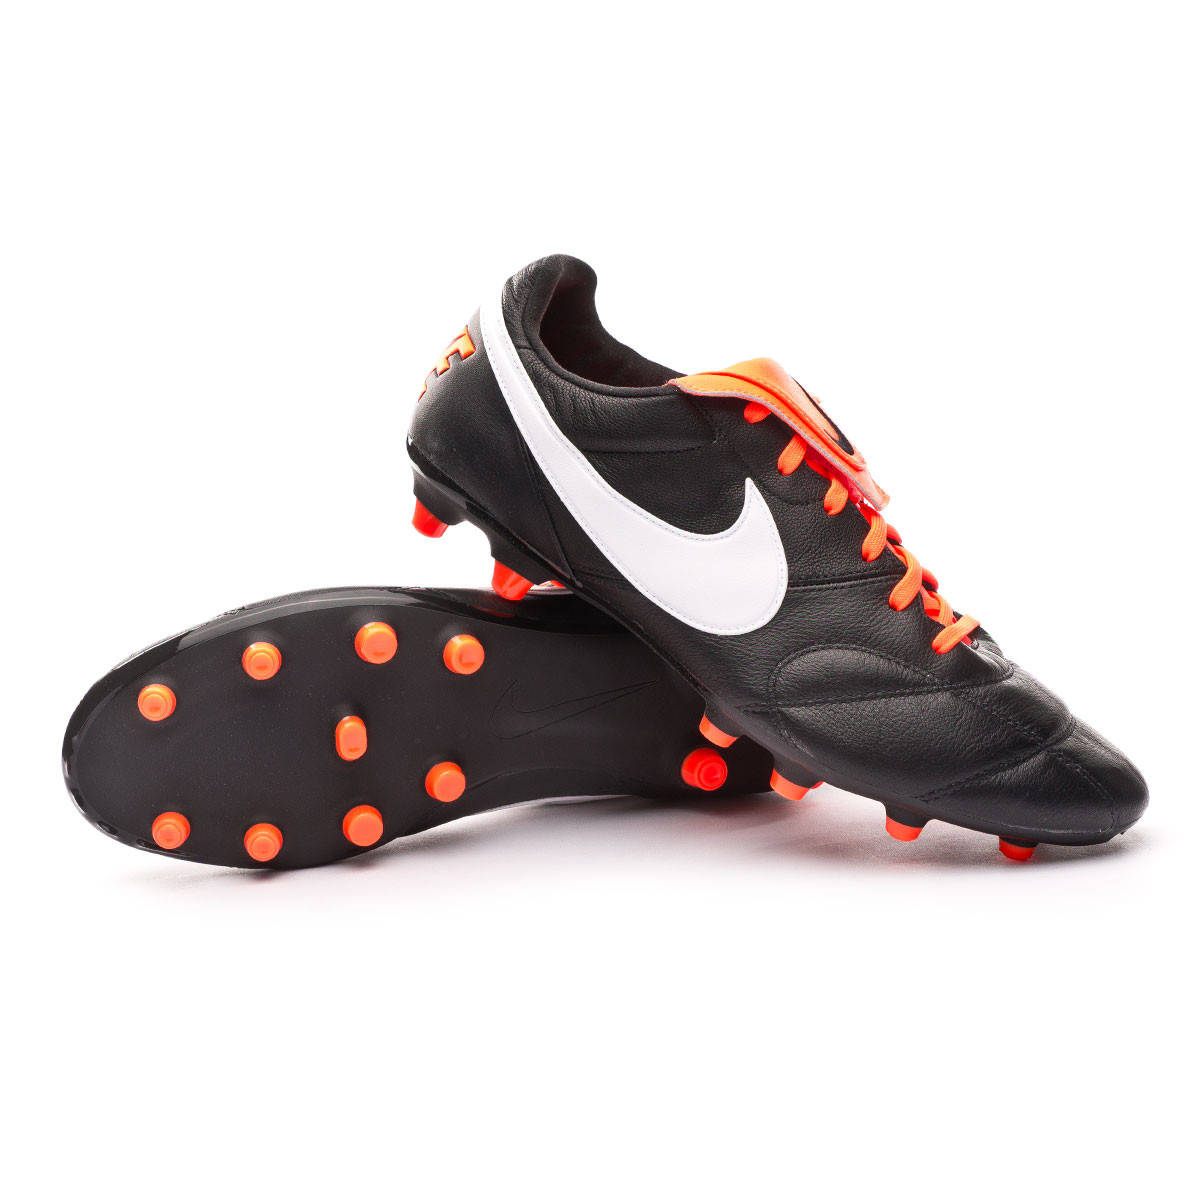 Bota de fútbol Nike Tiempo Premier II FG Black-White-Total orange - Tienda  de fútbol Fútbol Emotion